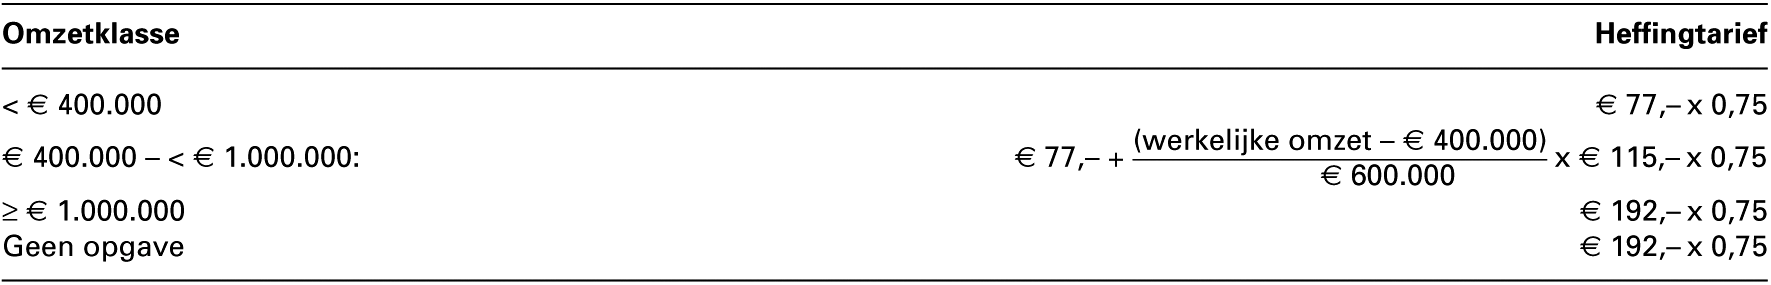 Bestemmingsheffingen toevoegingsmiddelen 2014 (in euro per onderneming)